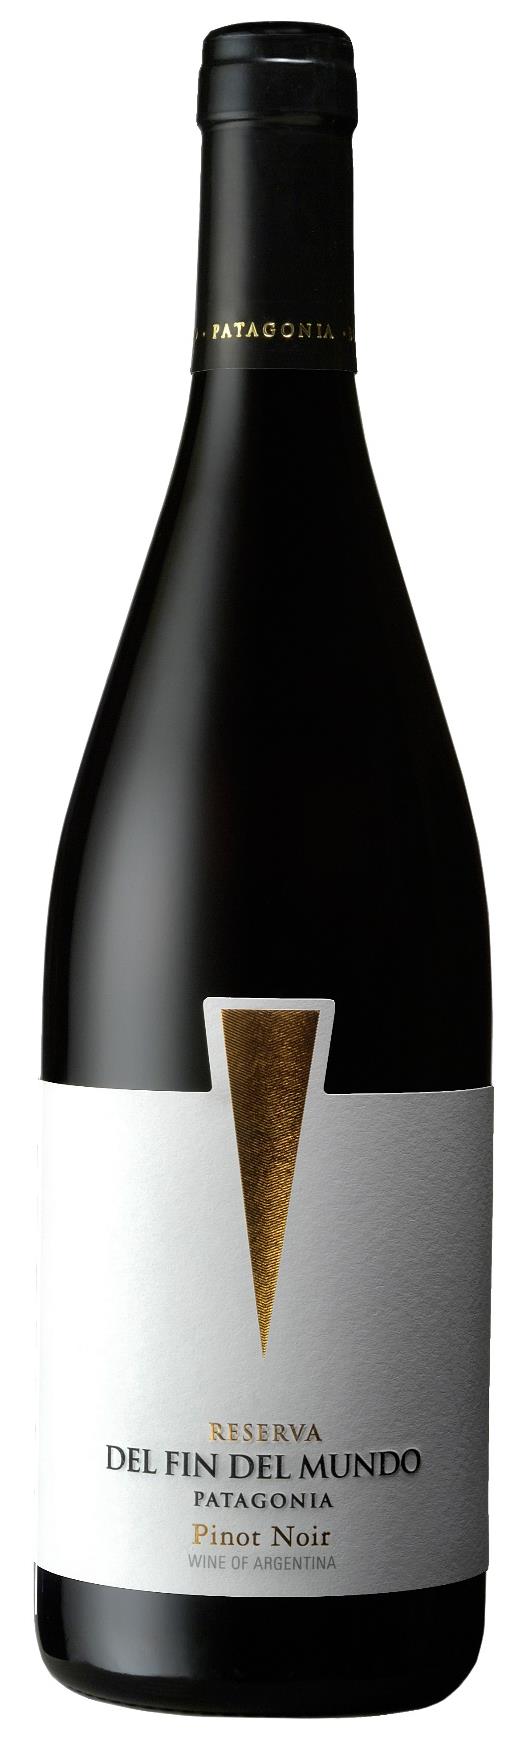 Reserva Pinot Noir 2013 750ml Cod cx: 14173 Cod uni: 214173 Variedade: Pinot Noir (100%) Origem: Patagônia, Argentina Teor Alcoólico: 14,0% Servir a: 16ºC a 18ºC 12 meses de envelhecimento em barris